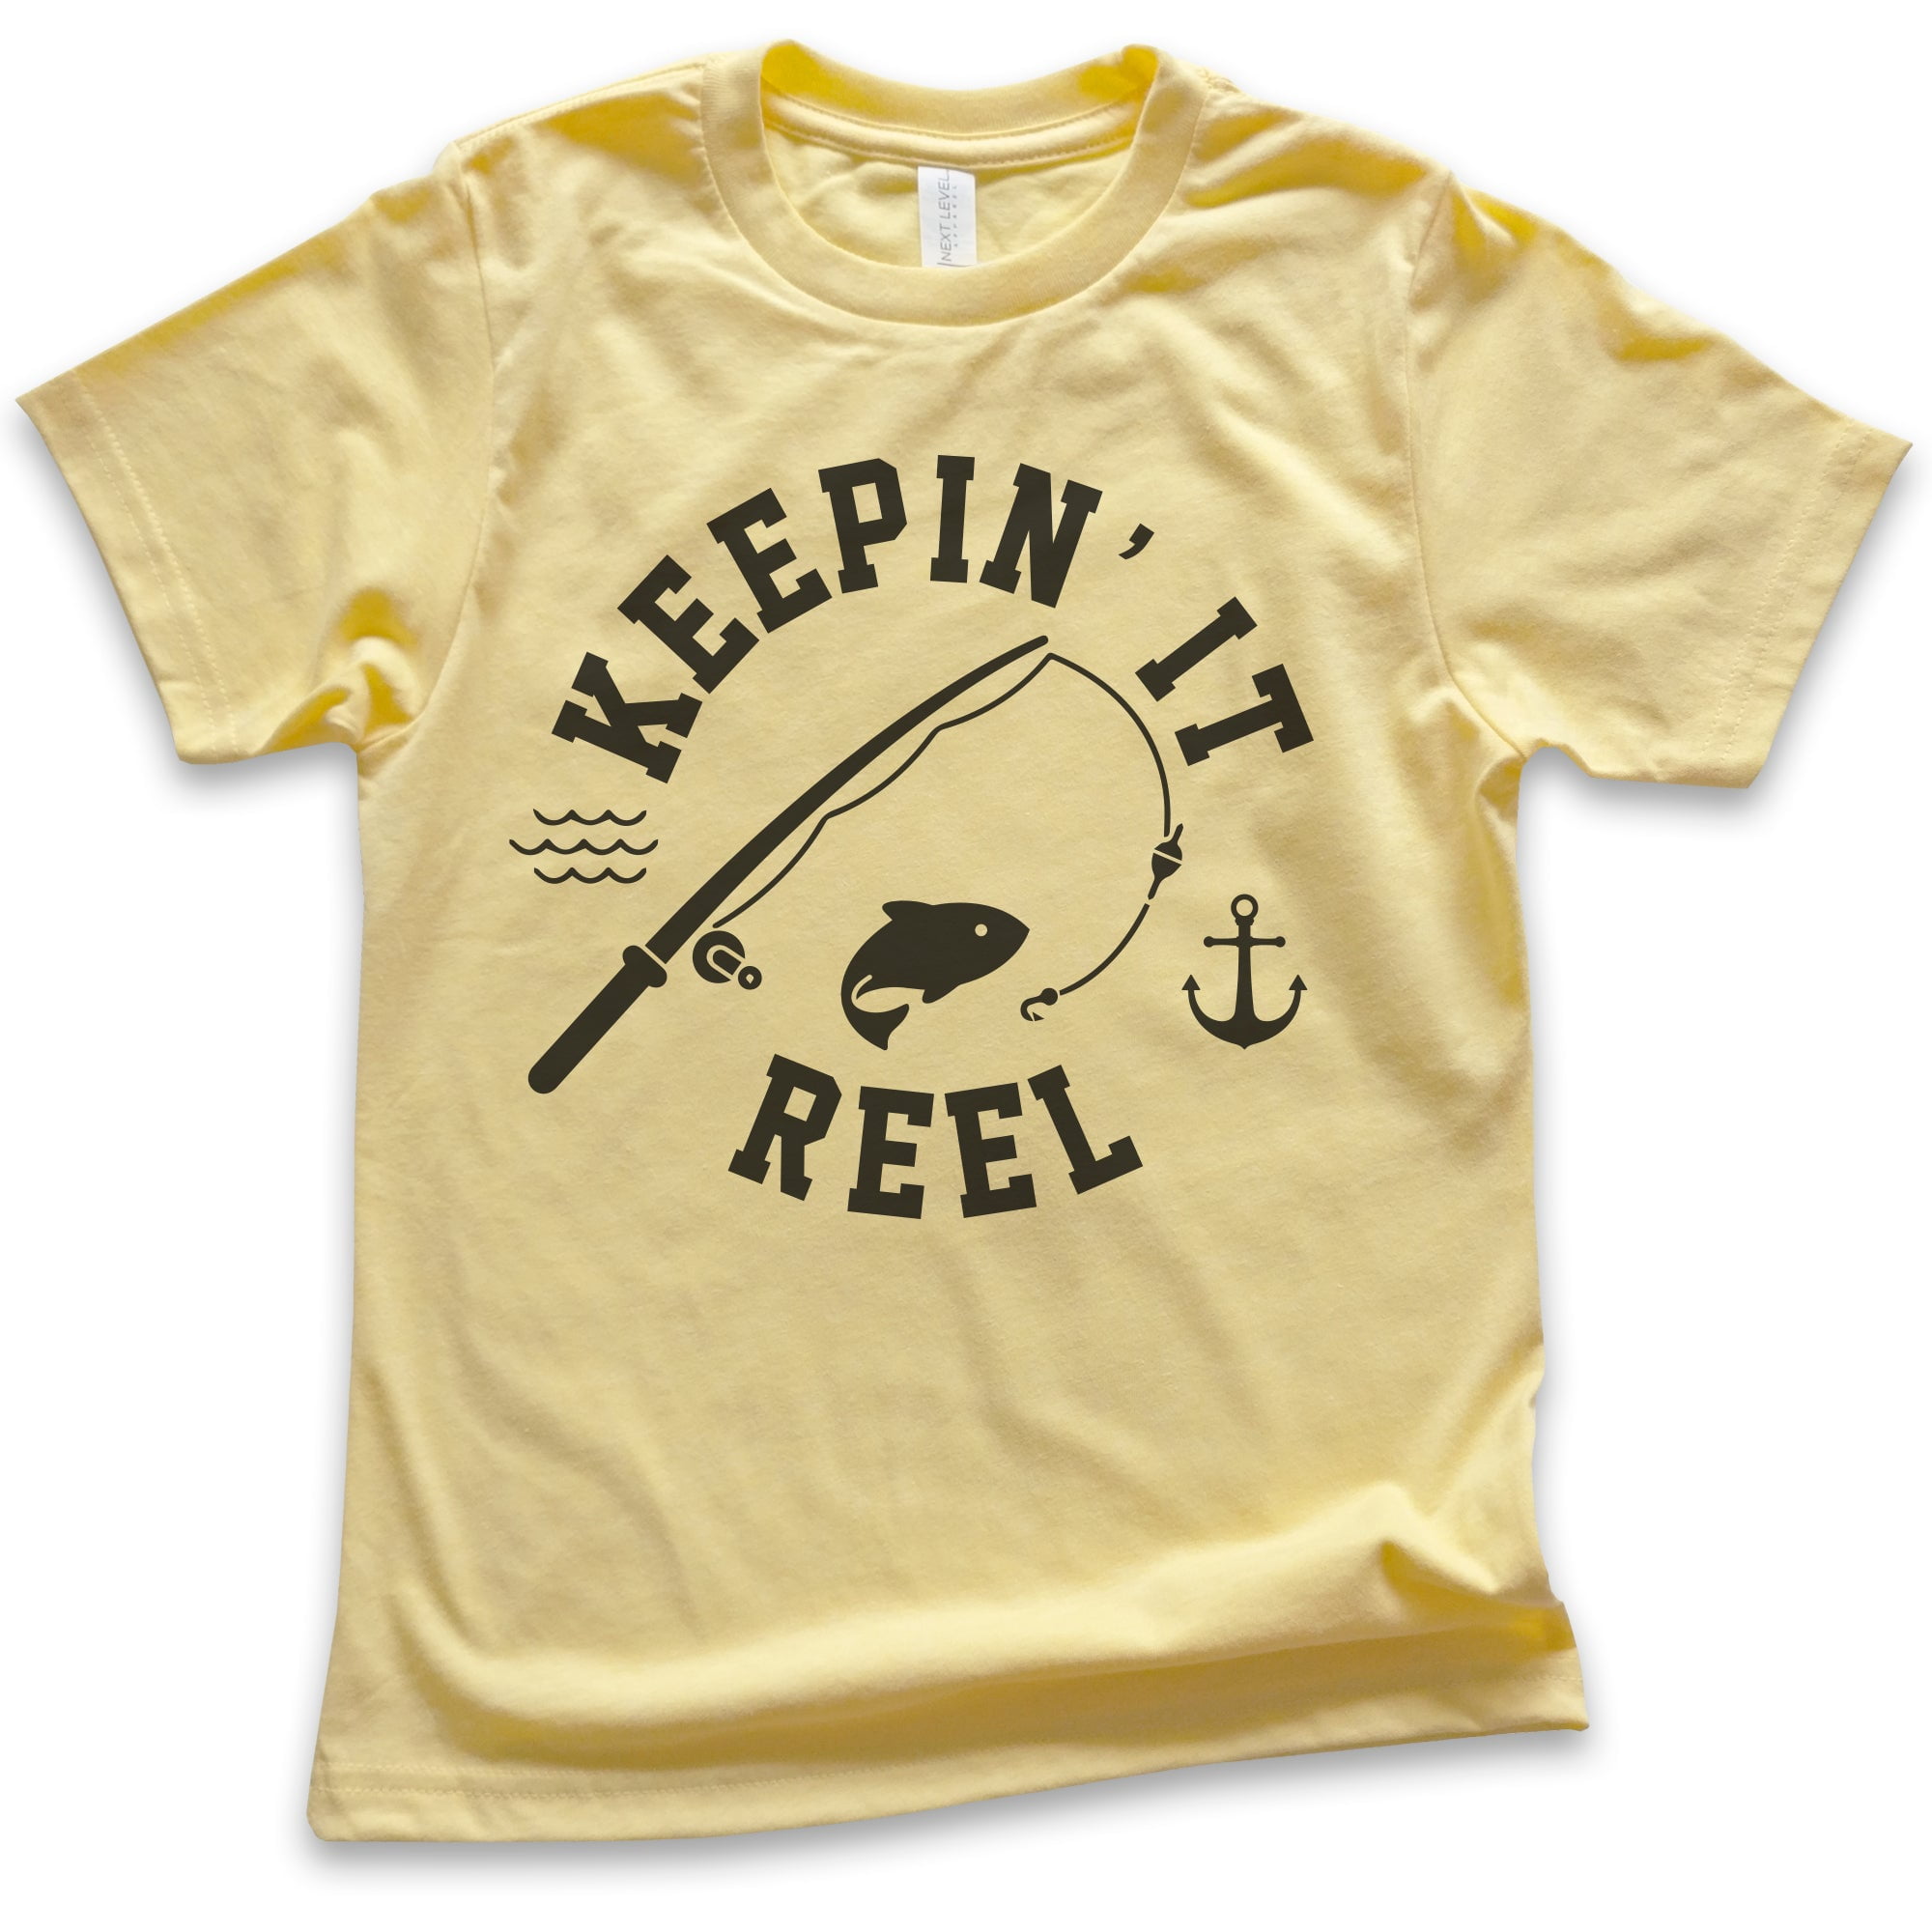 Kids Keepin' It Reel Shirt, Youth Kids Boy Girl T-Shirt, Fishing Shirt,  Fish Pun Shirt, Yellow, X-Small